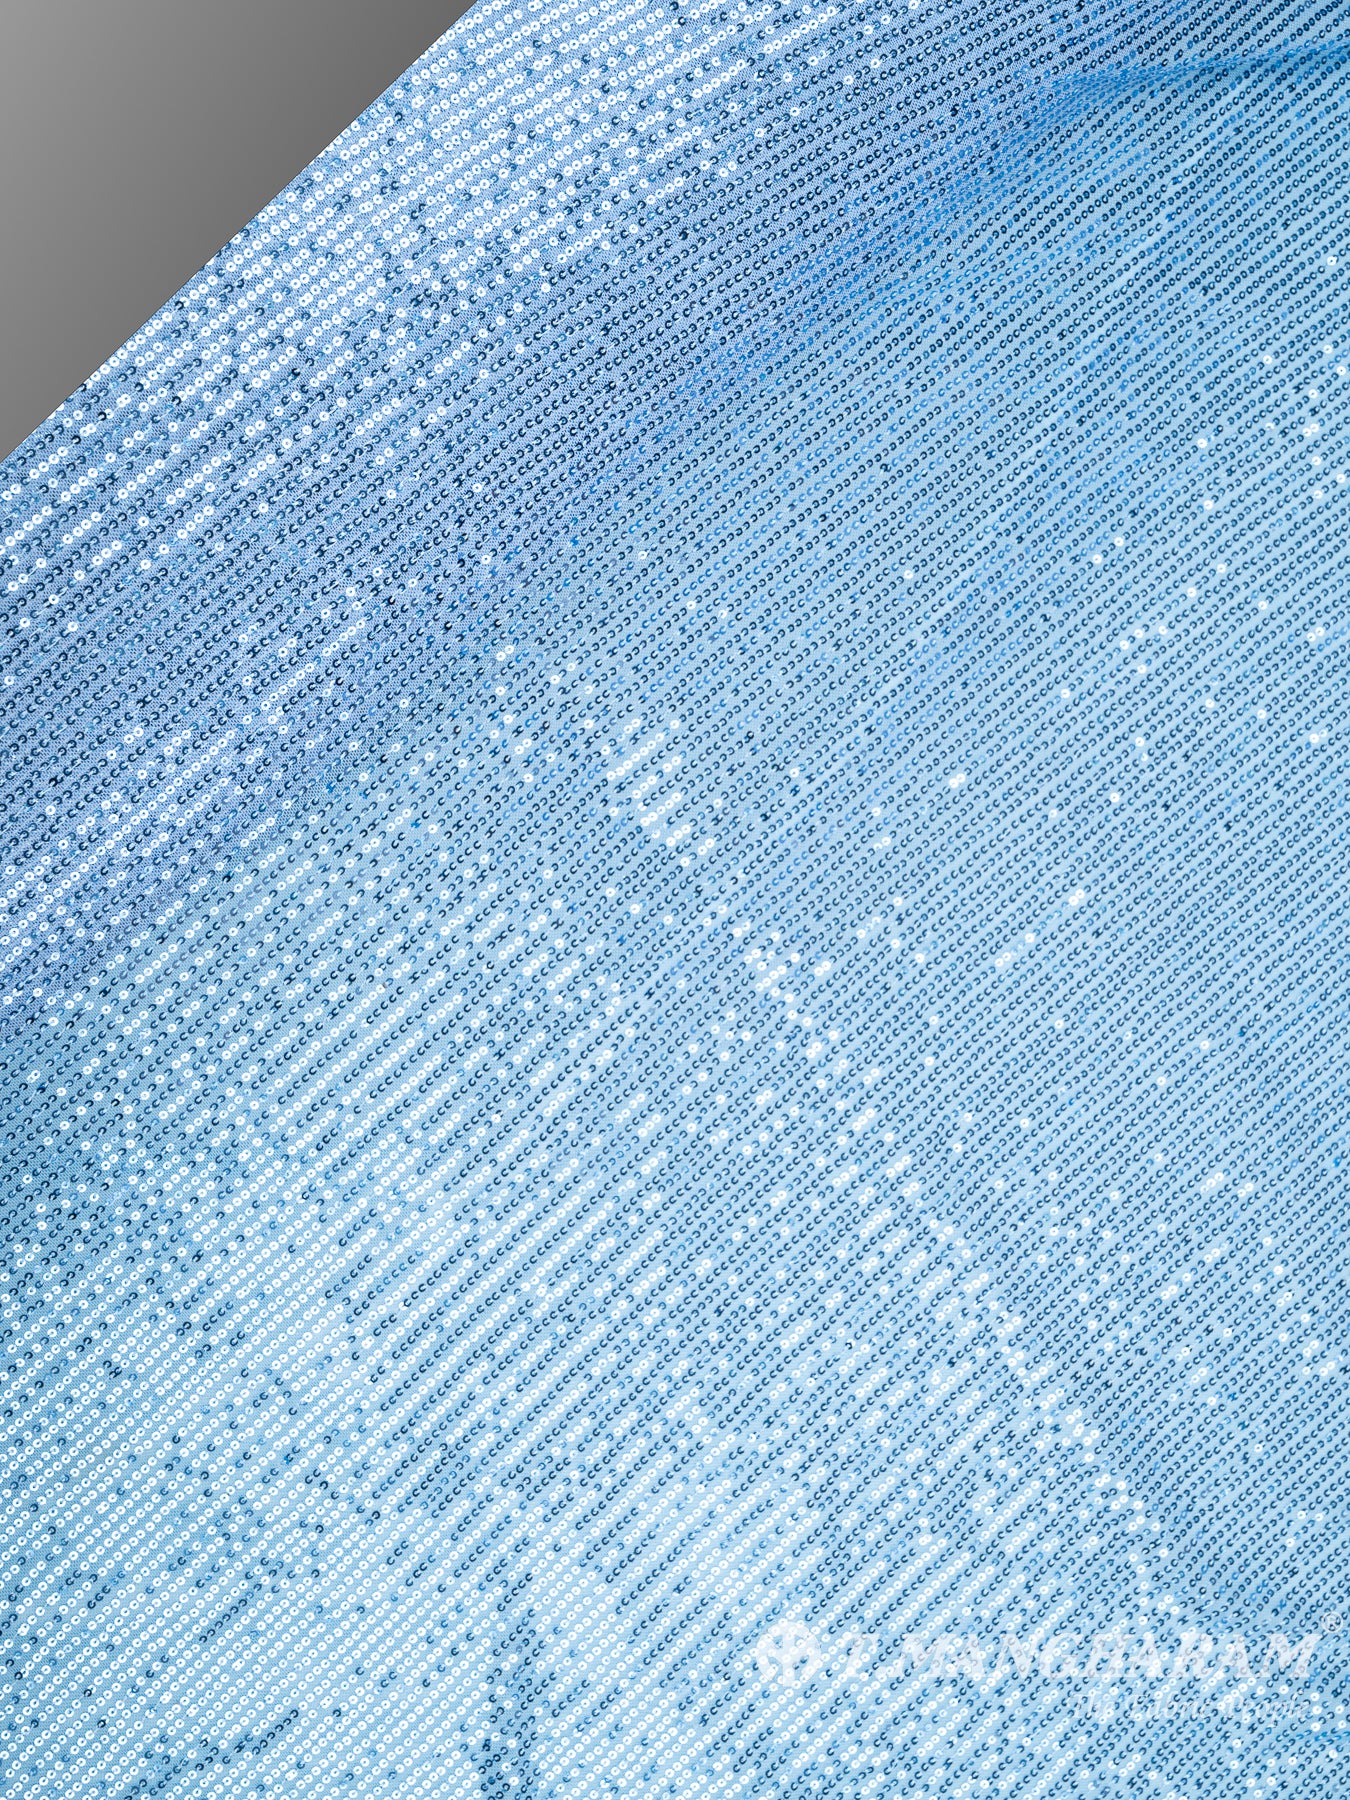 Blue Fancy Net Fabric - EC8579 view-2